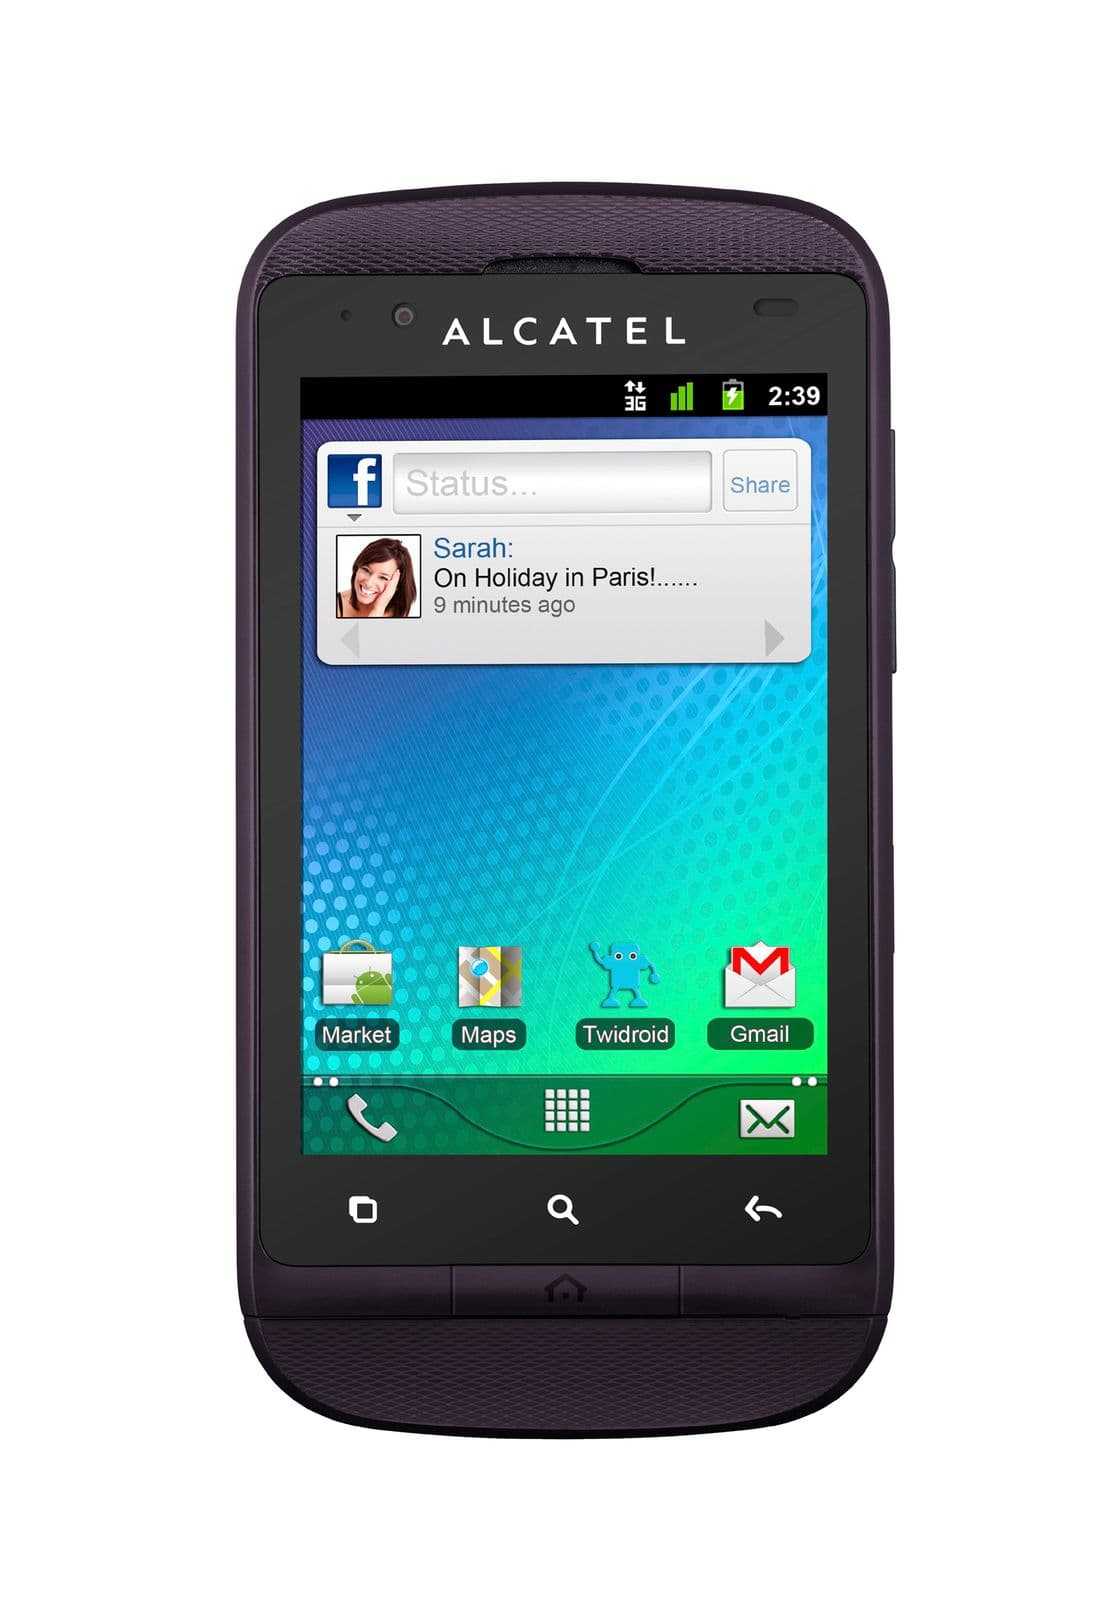 Alcatel ot-117 - купить  в саратов, скидки, цена, отзывы, обзор, характеристики - мобильные телефоны